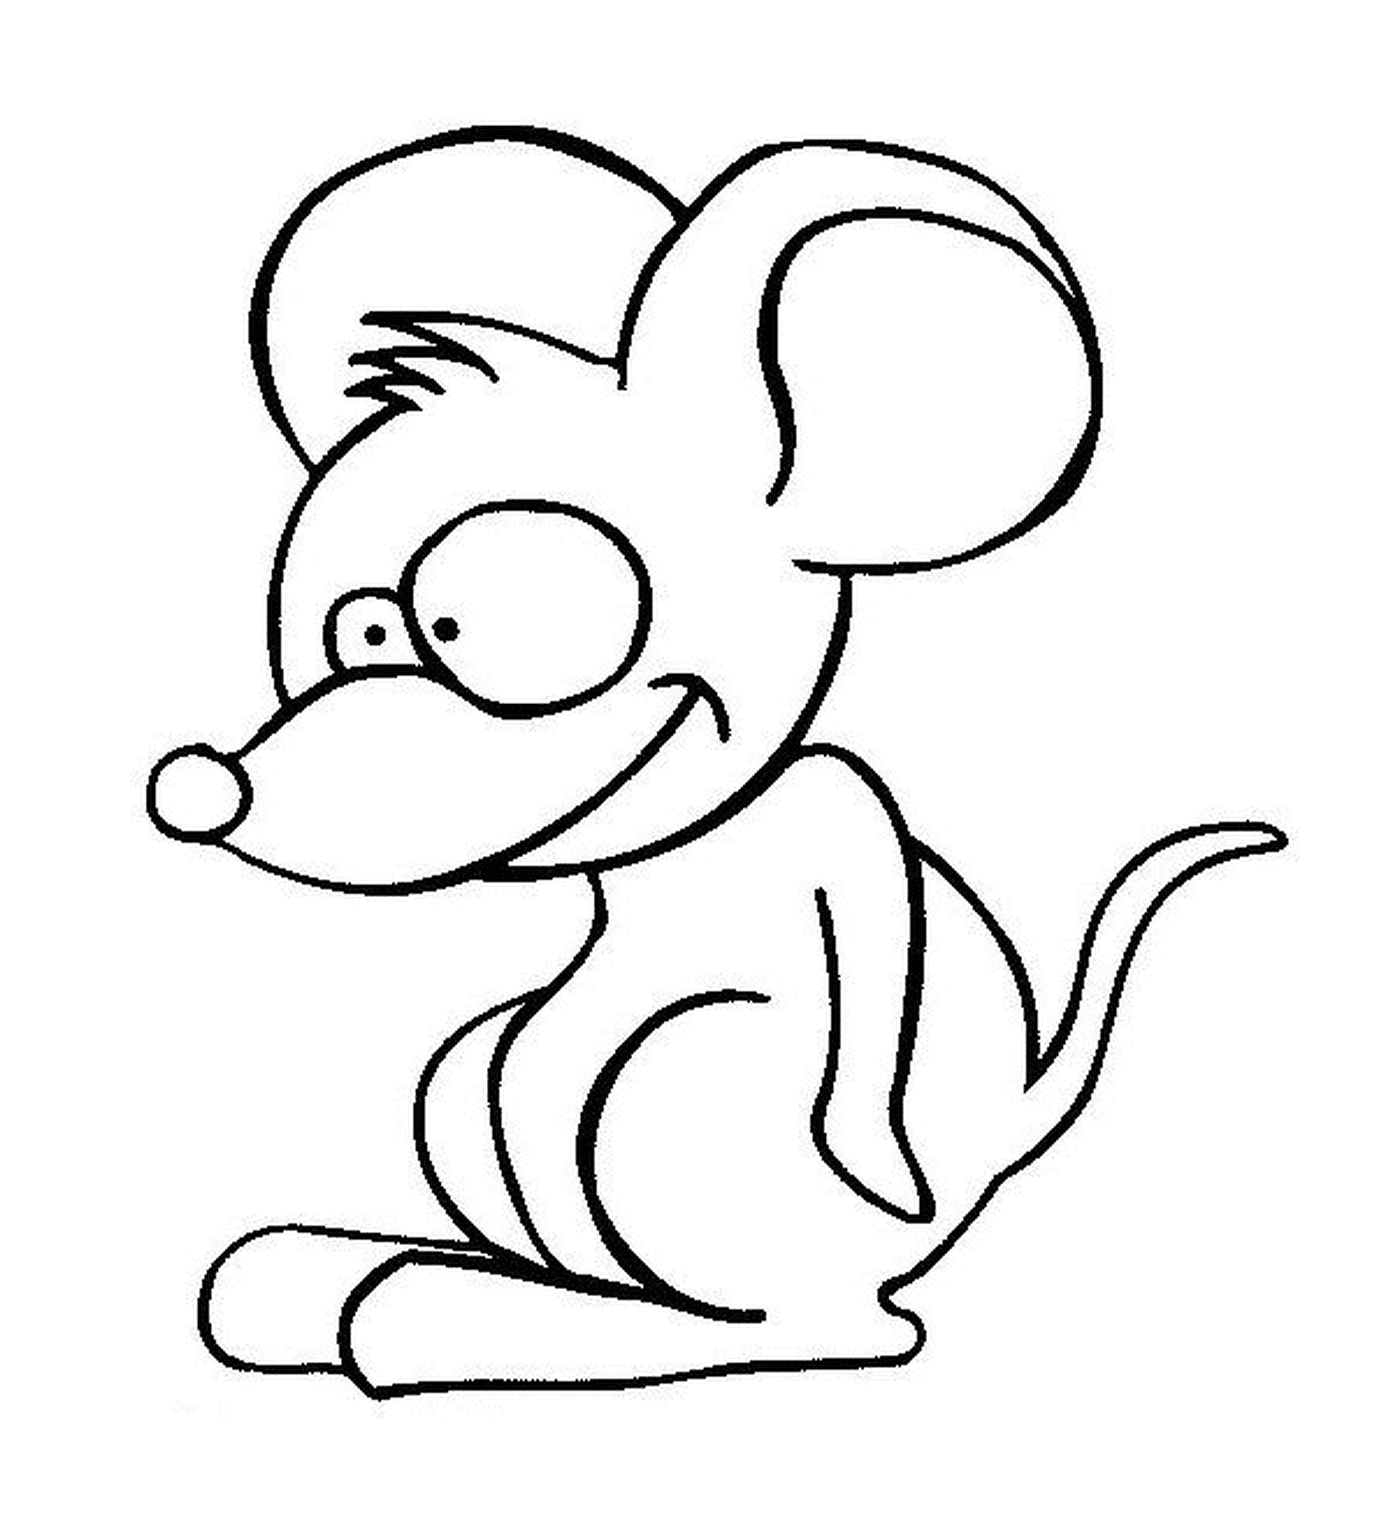  Un topo con la testa grande 